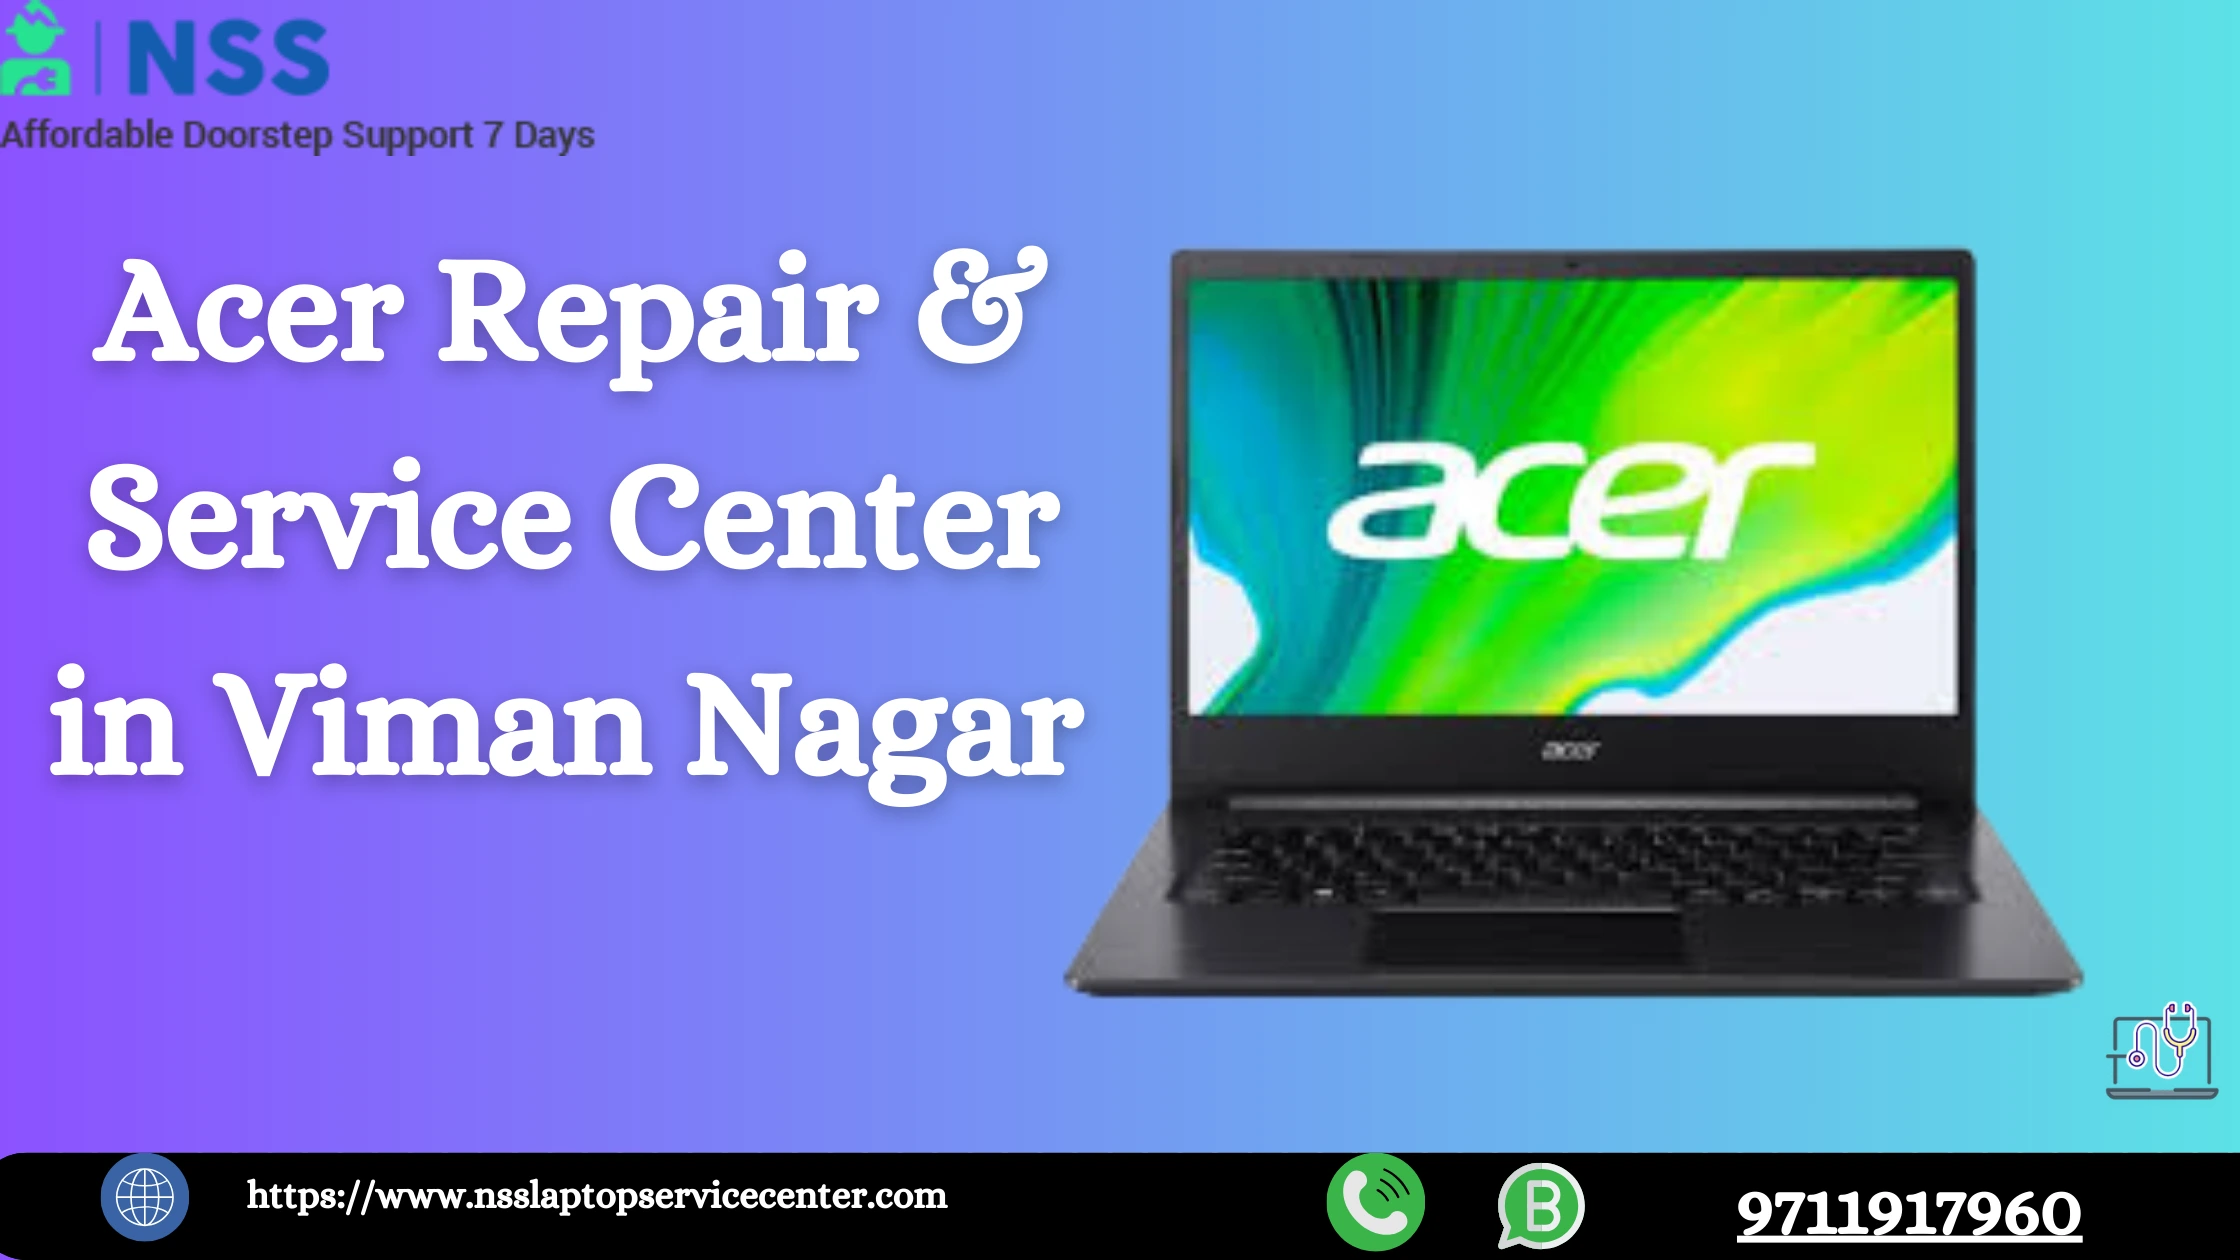 Acer Repair & Service Center In Viman Nagar, Pune